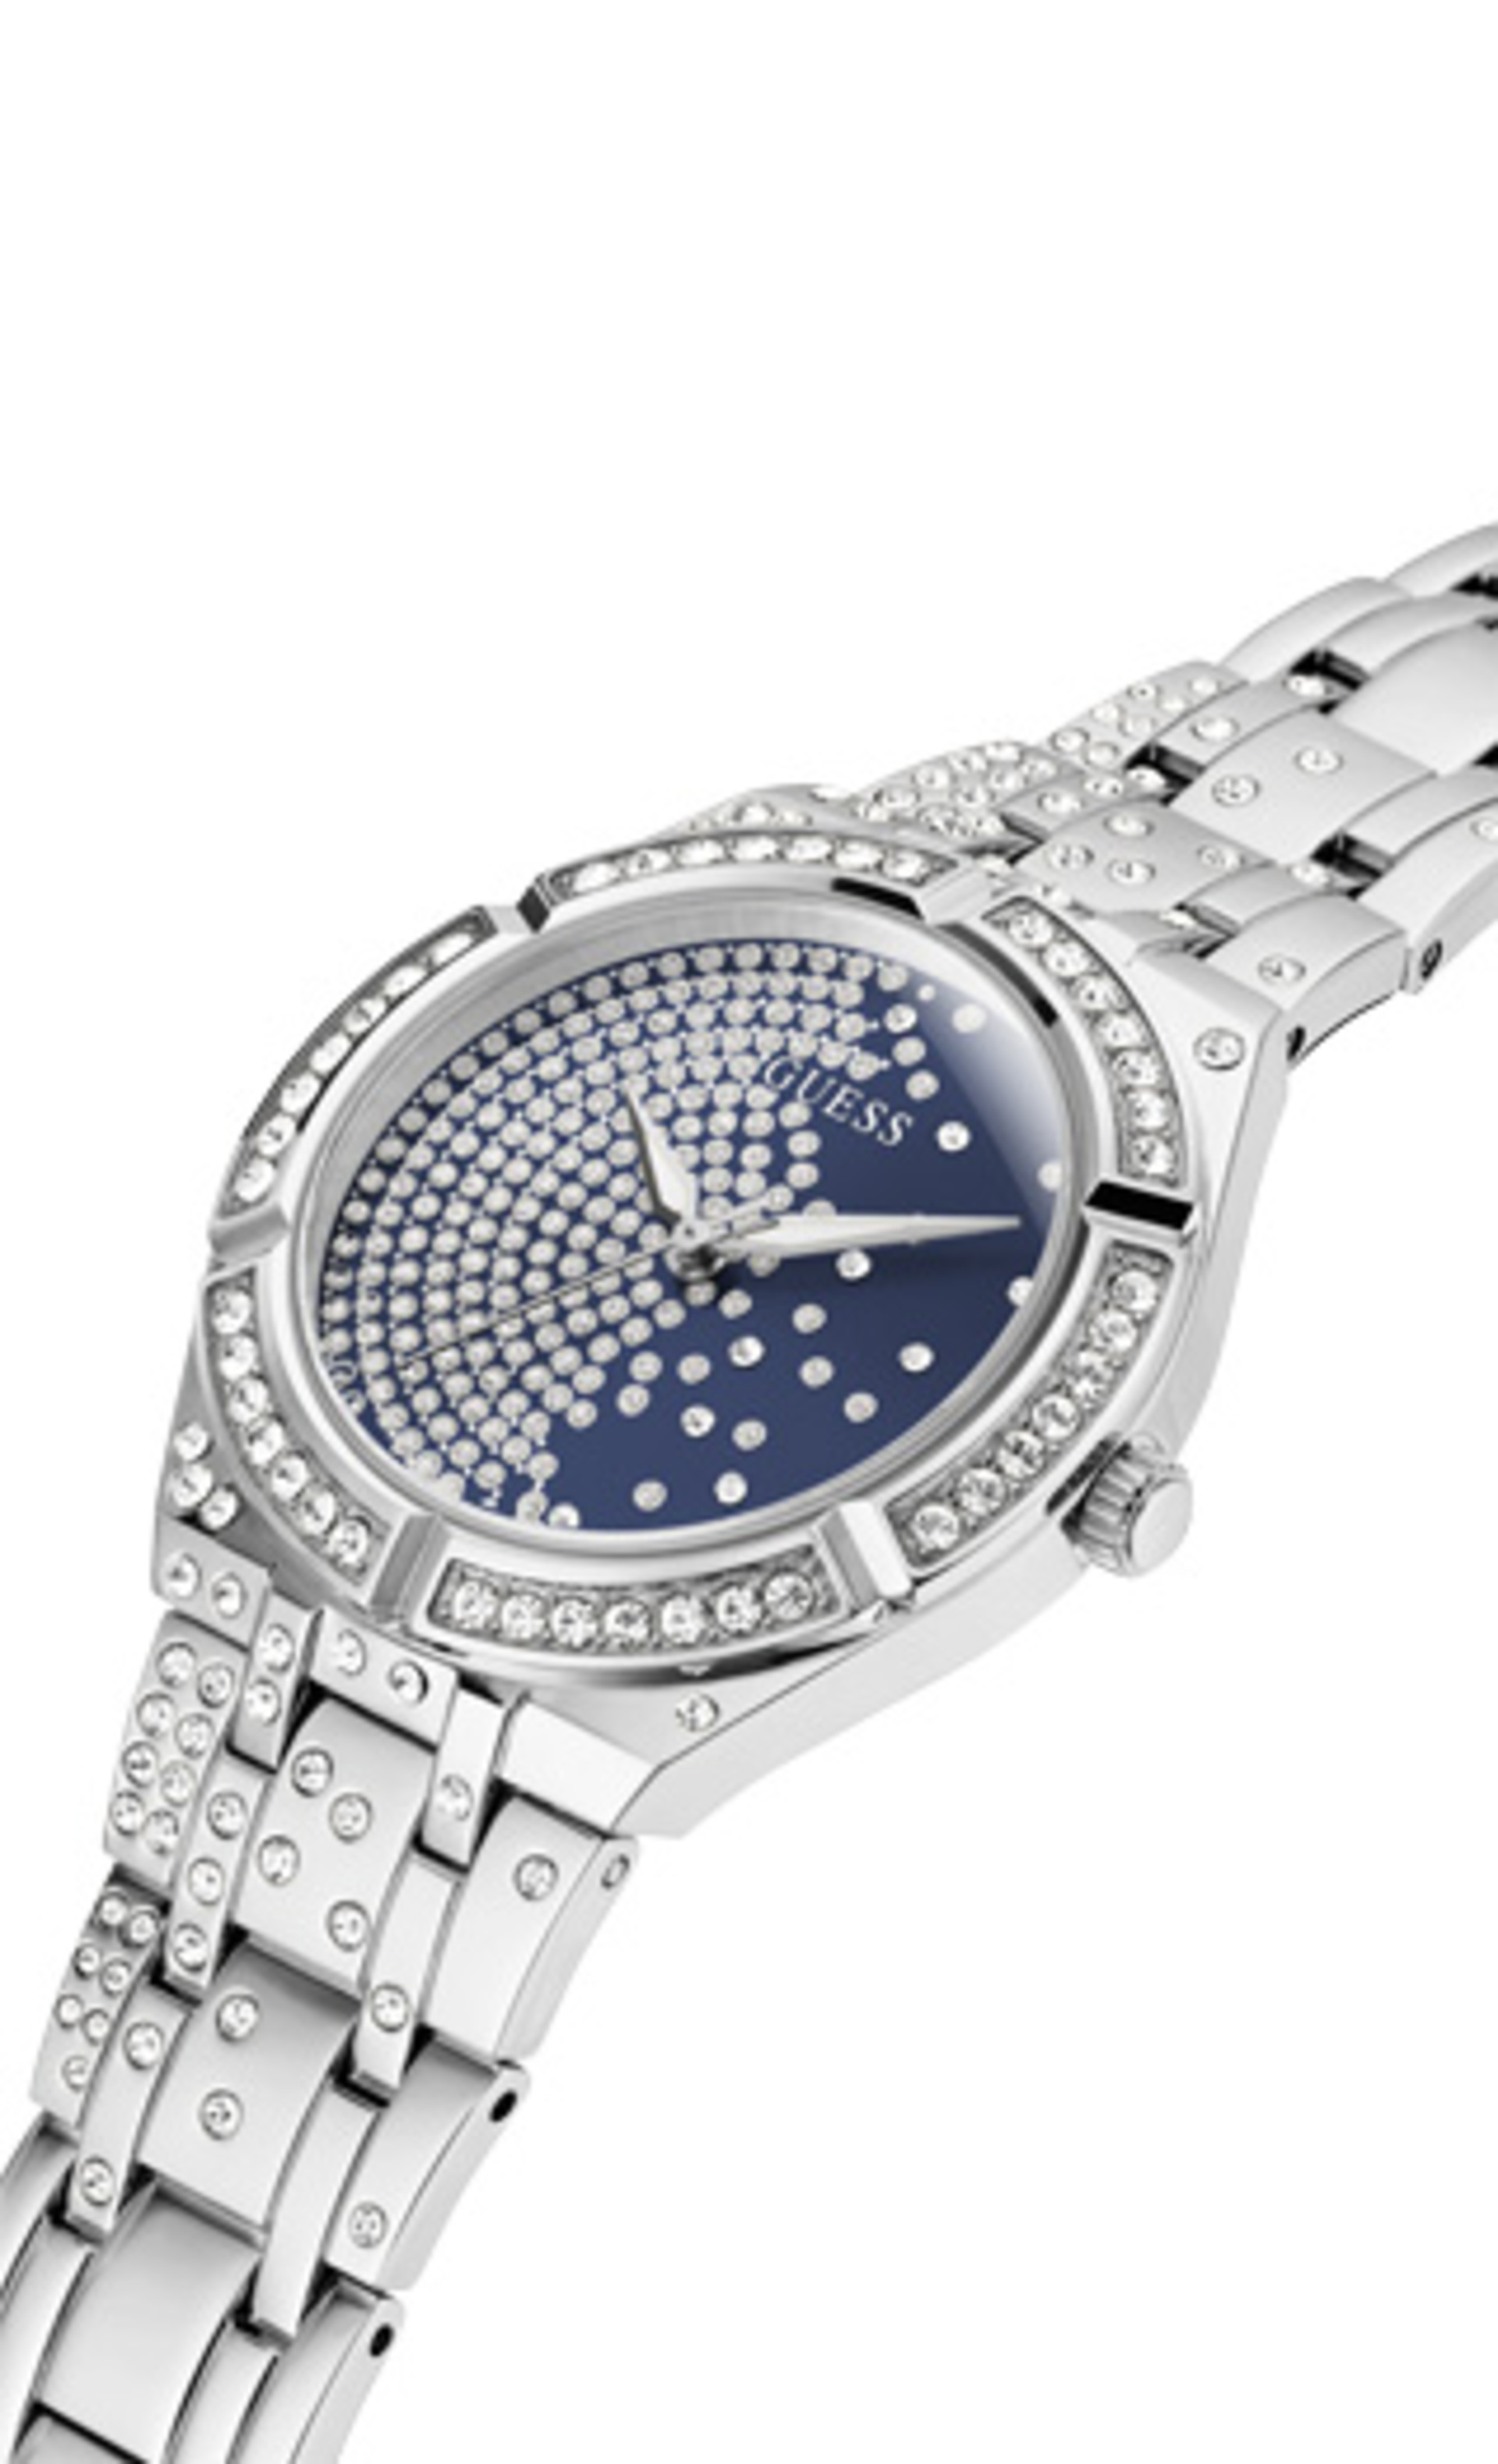 Guess dámské stříbrné hodinky - UNI (SIL)